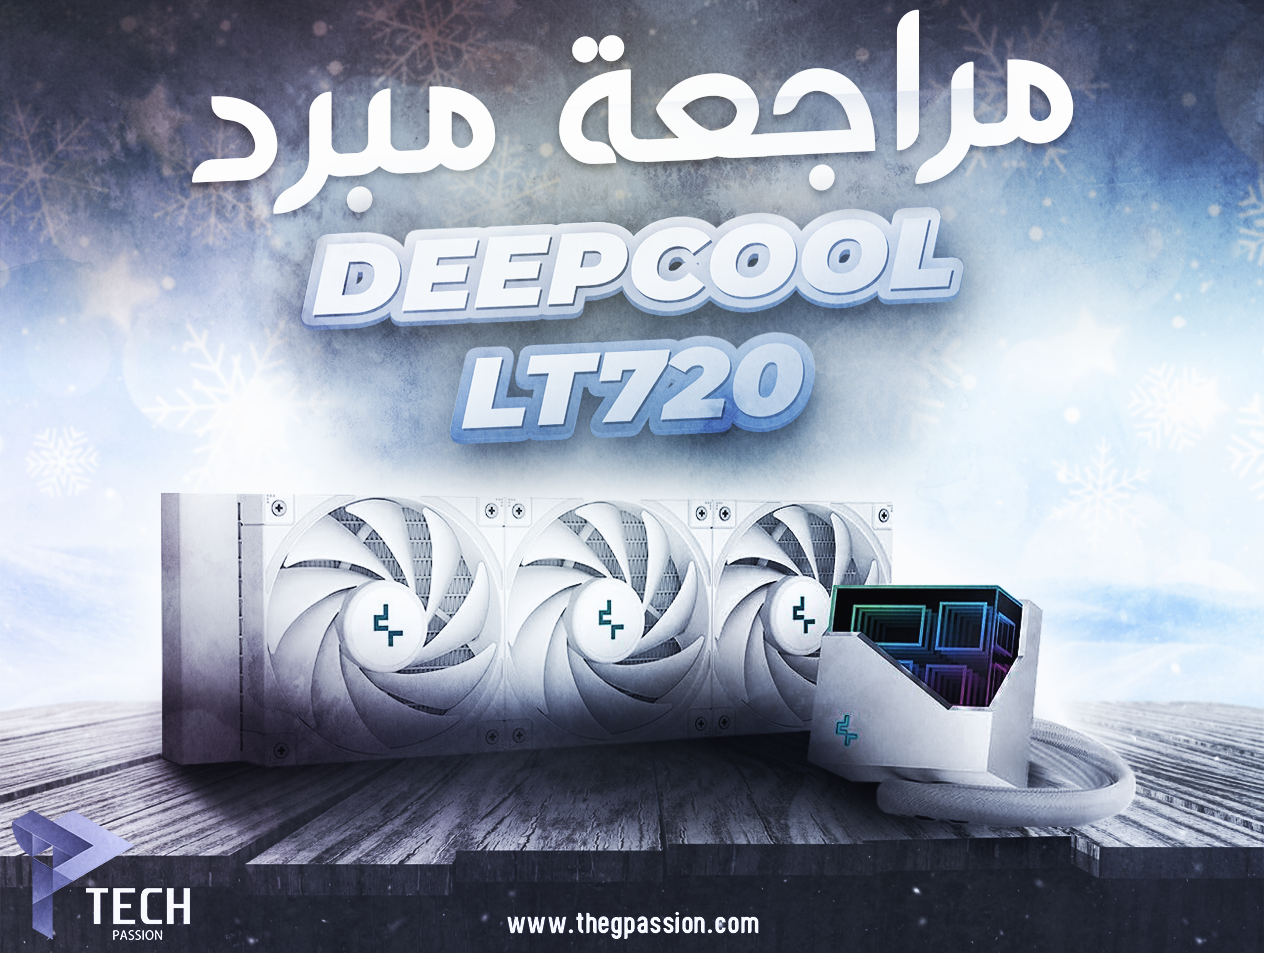 مراجعة مبرد DeepCool LT720 WH